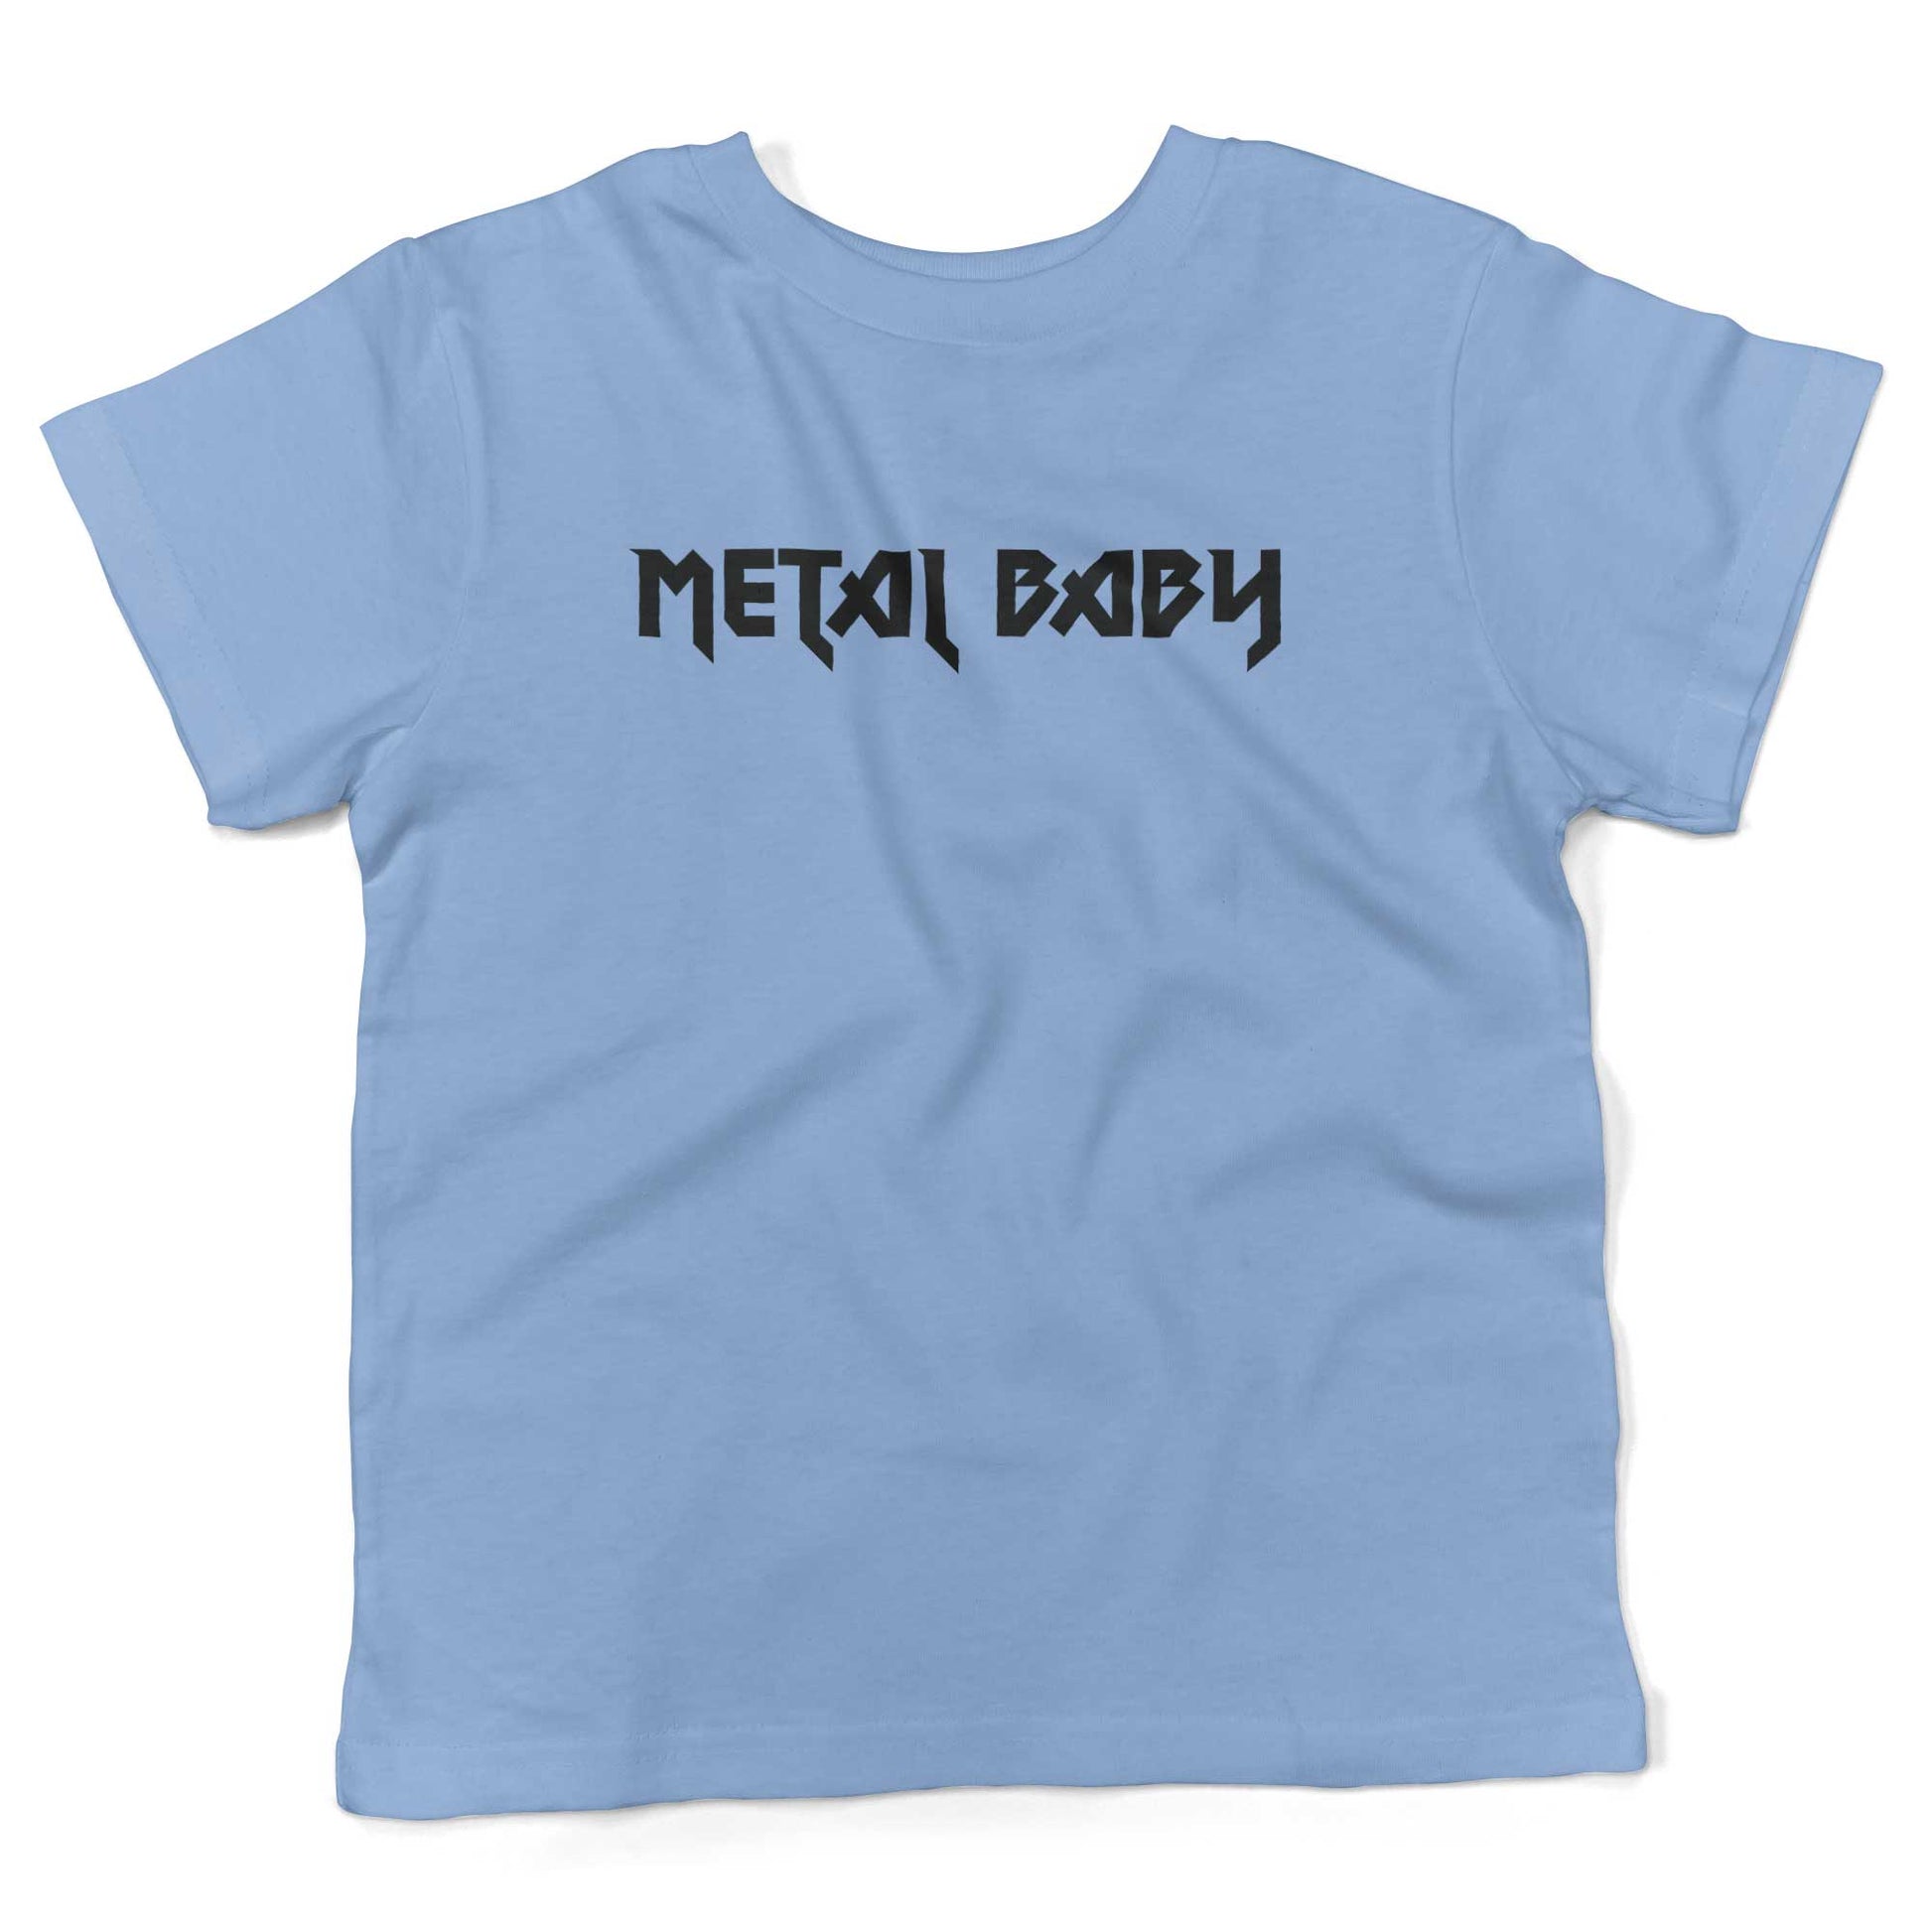 Metal Baby Toddler Shirt-Organic Baby Blue-2T